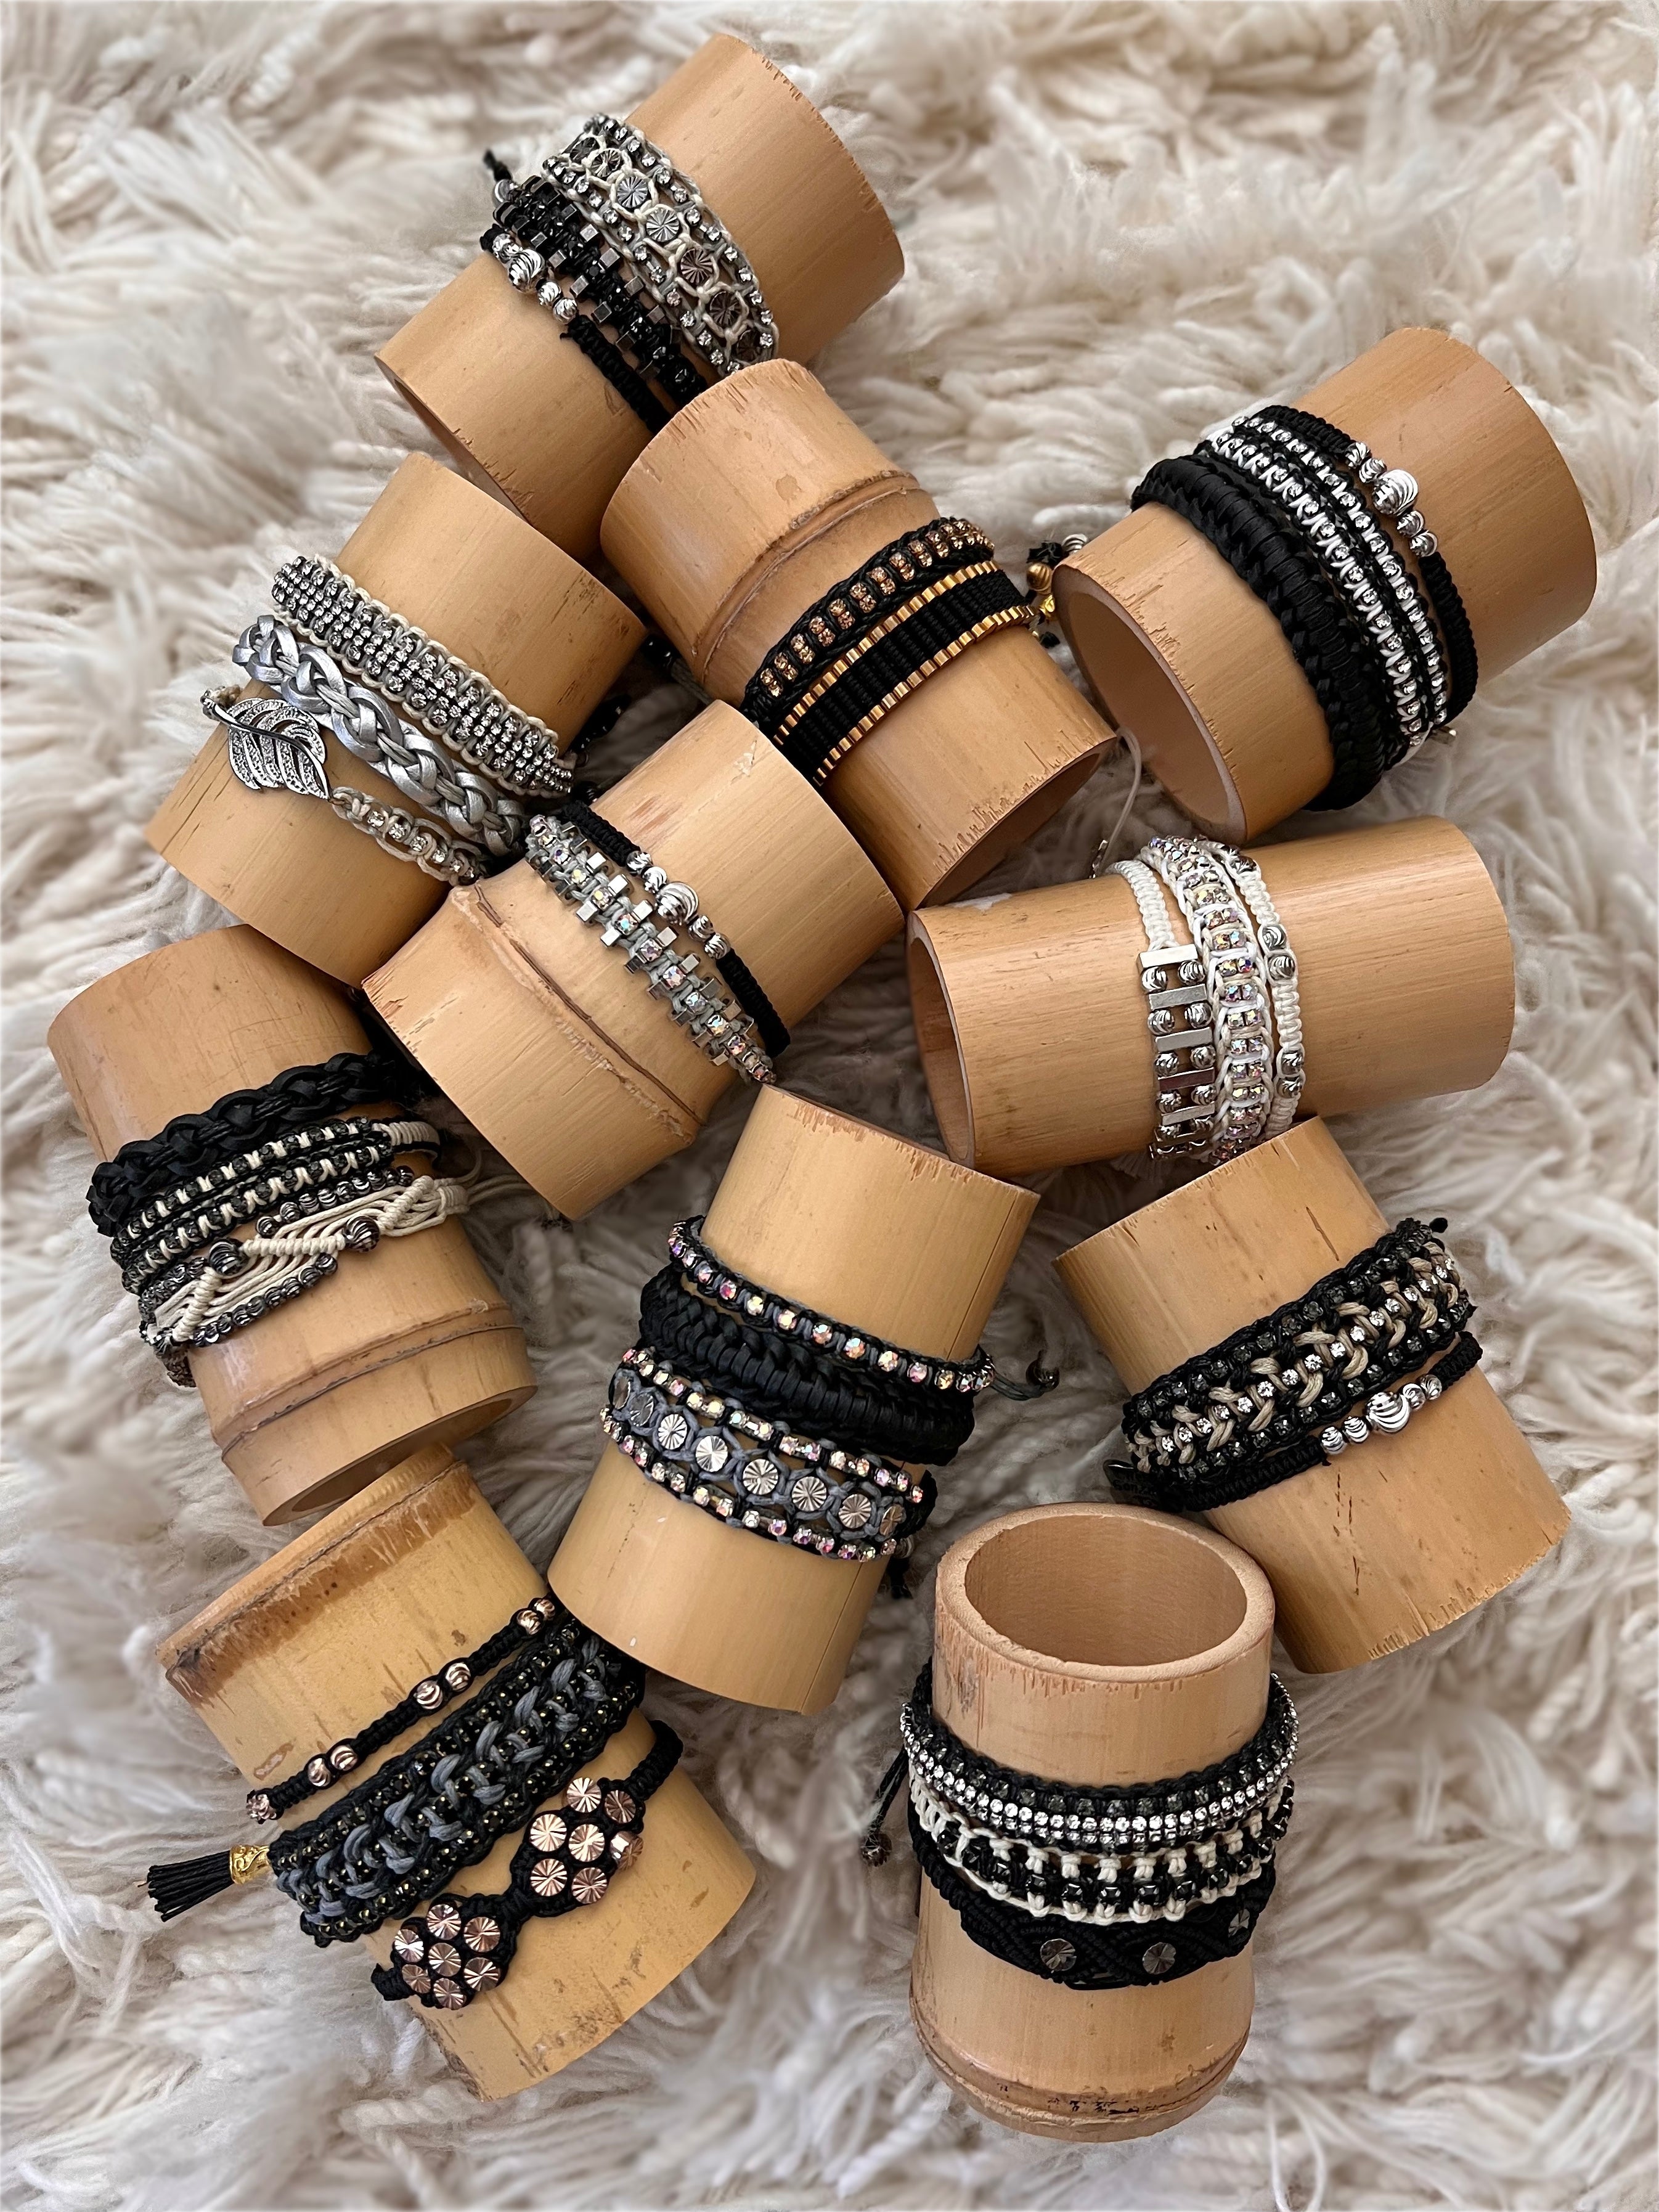 Blackout: Macrame String Bracelet Set